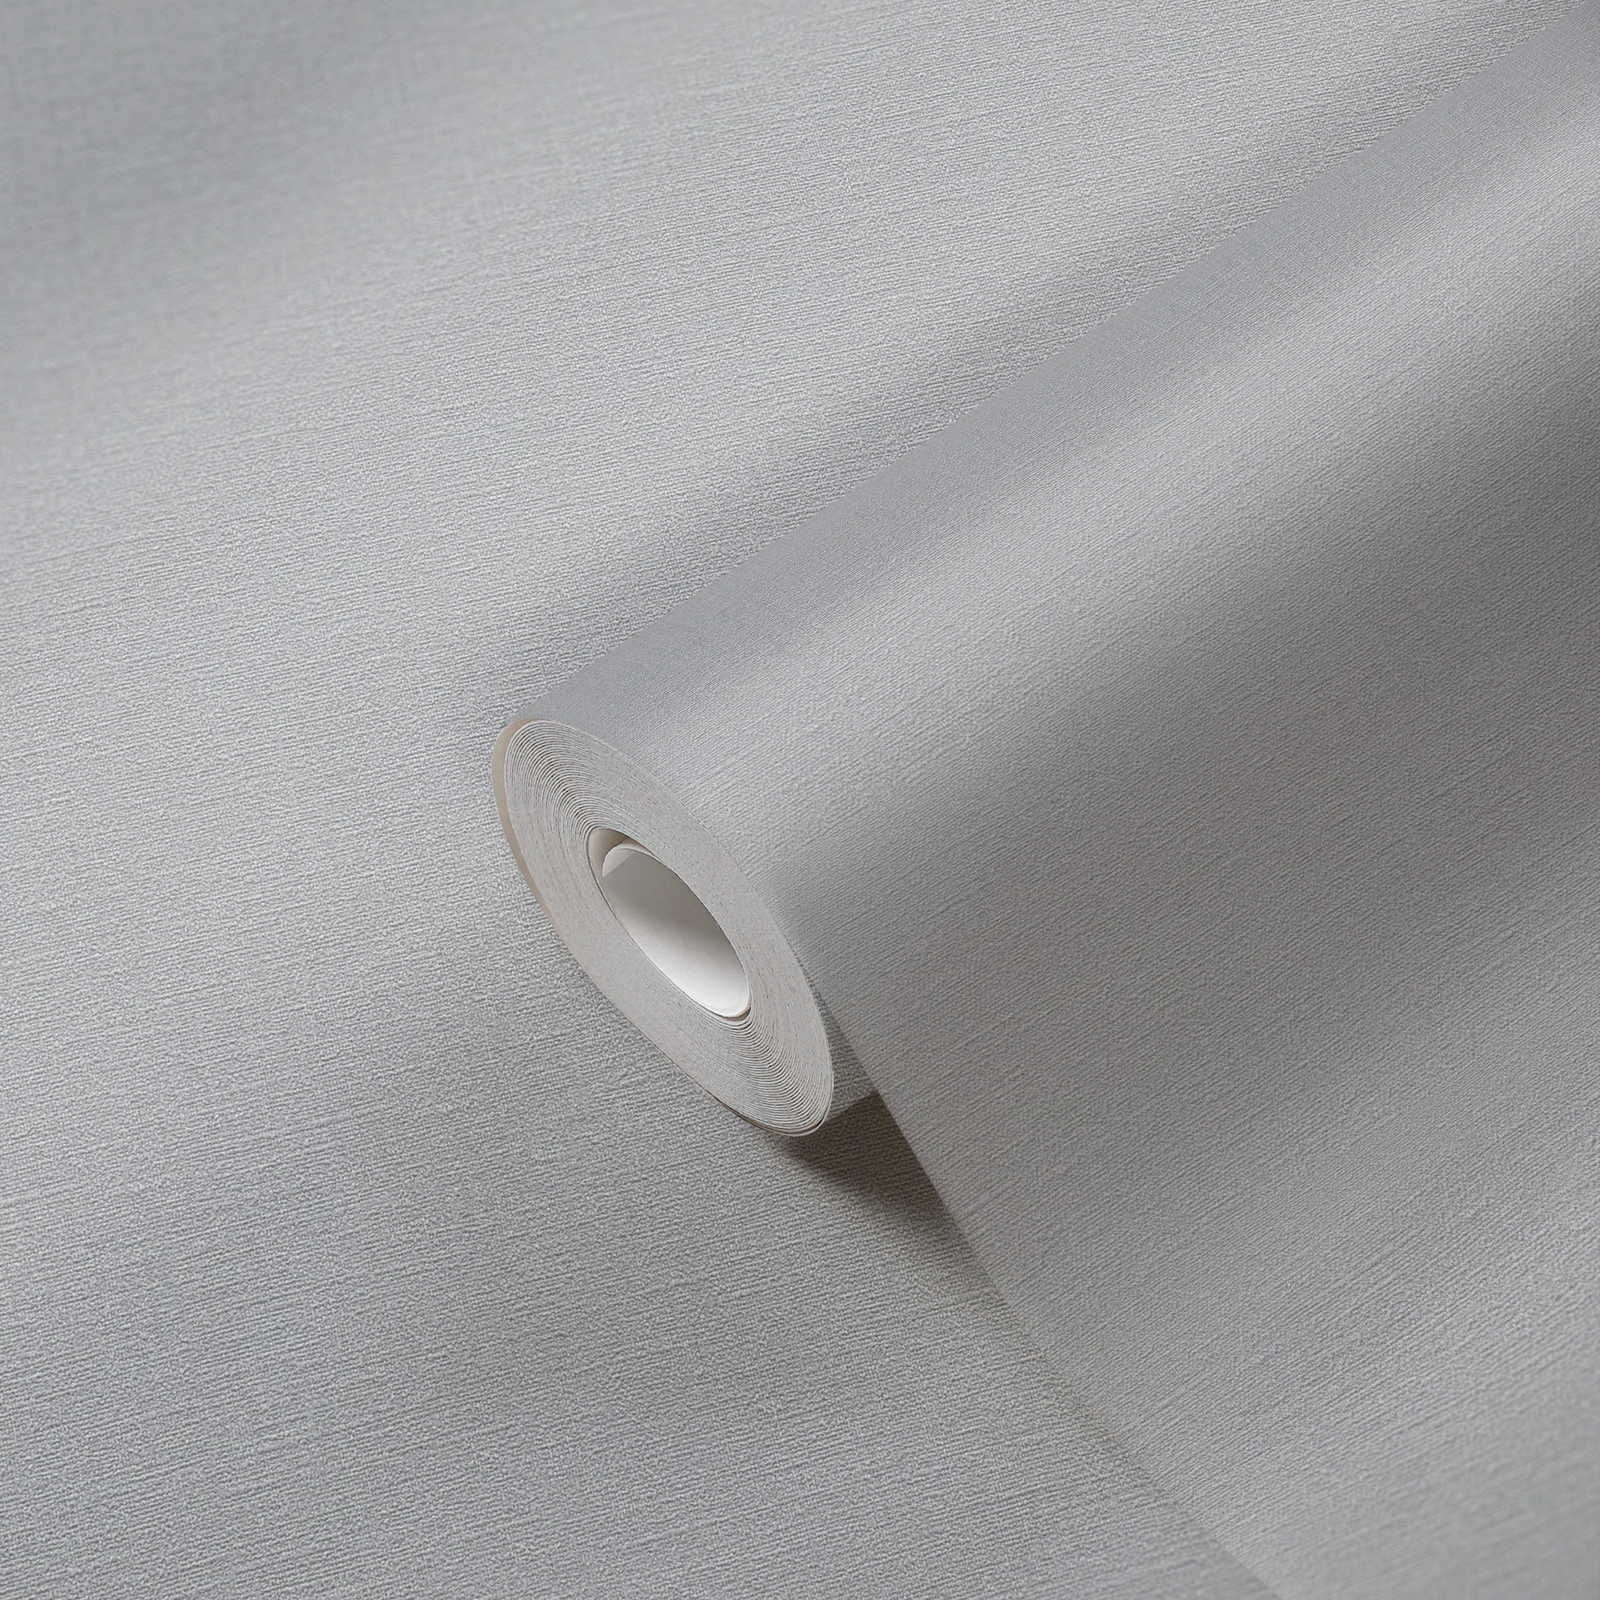             Vliesbehang effen met lichte textielstructuur PVC-vrij - beige
        